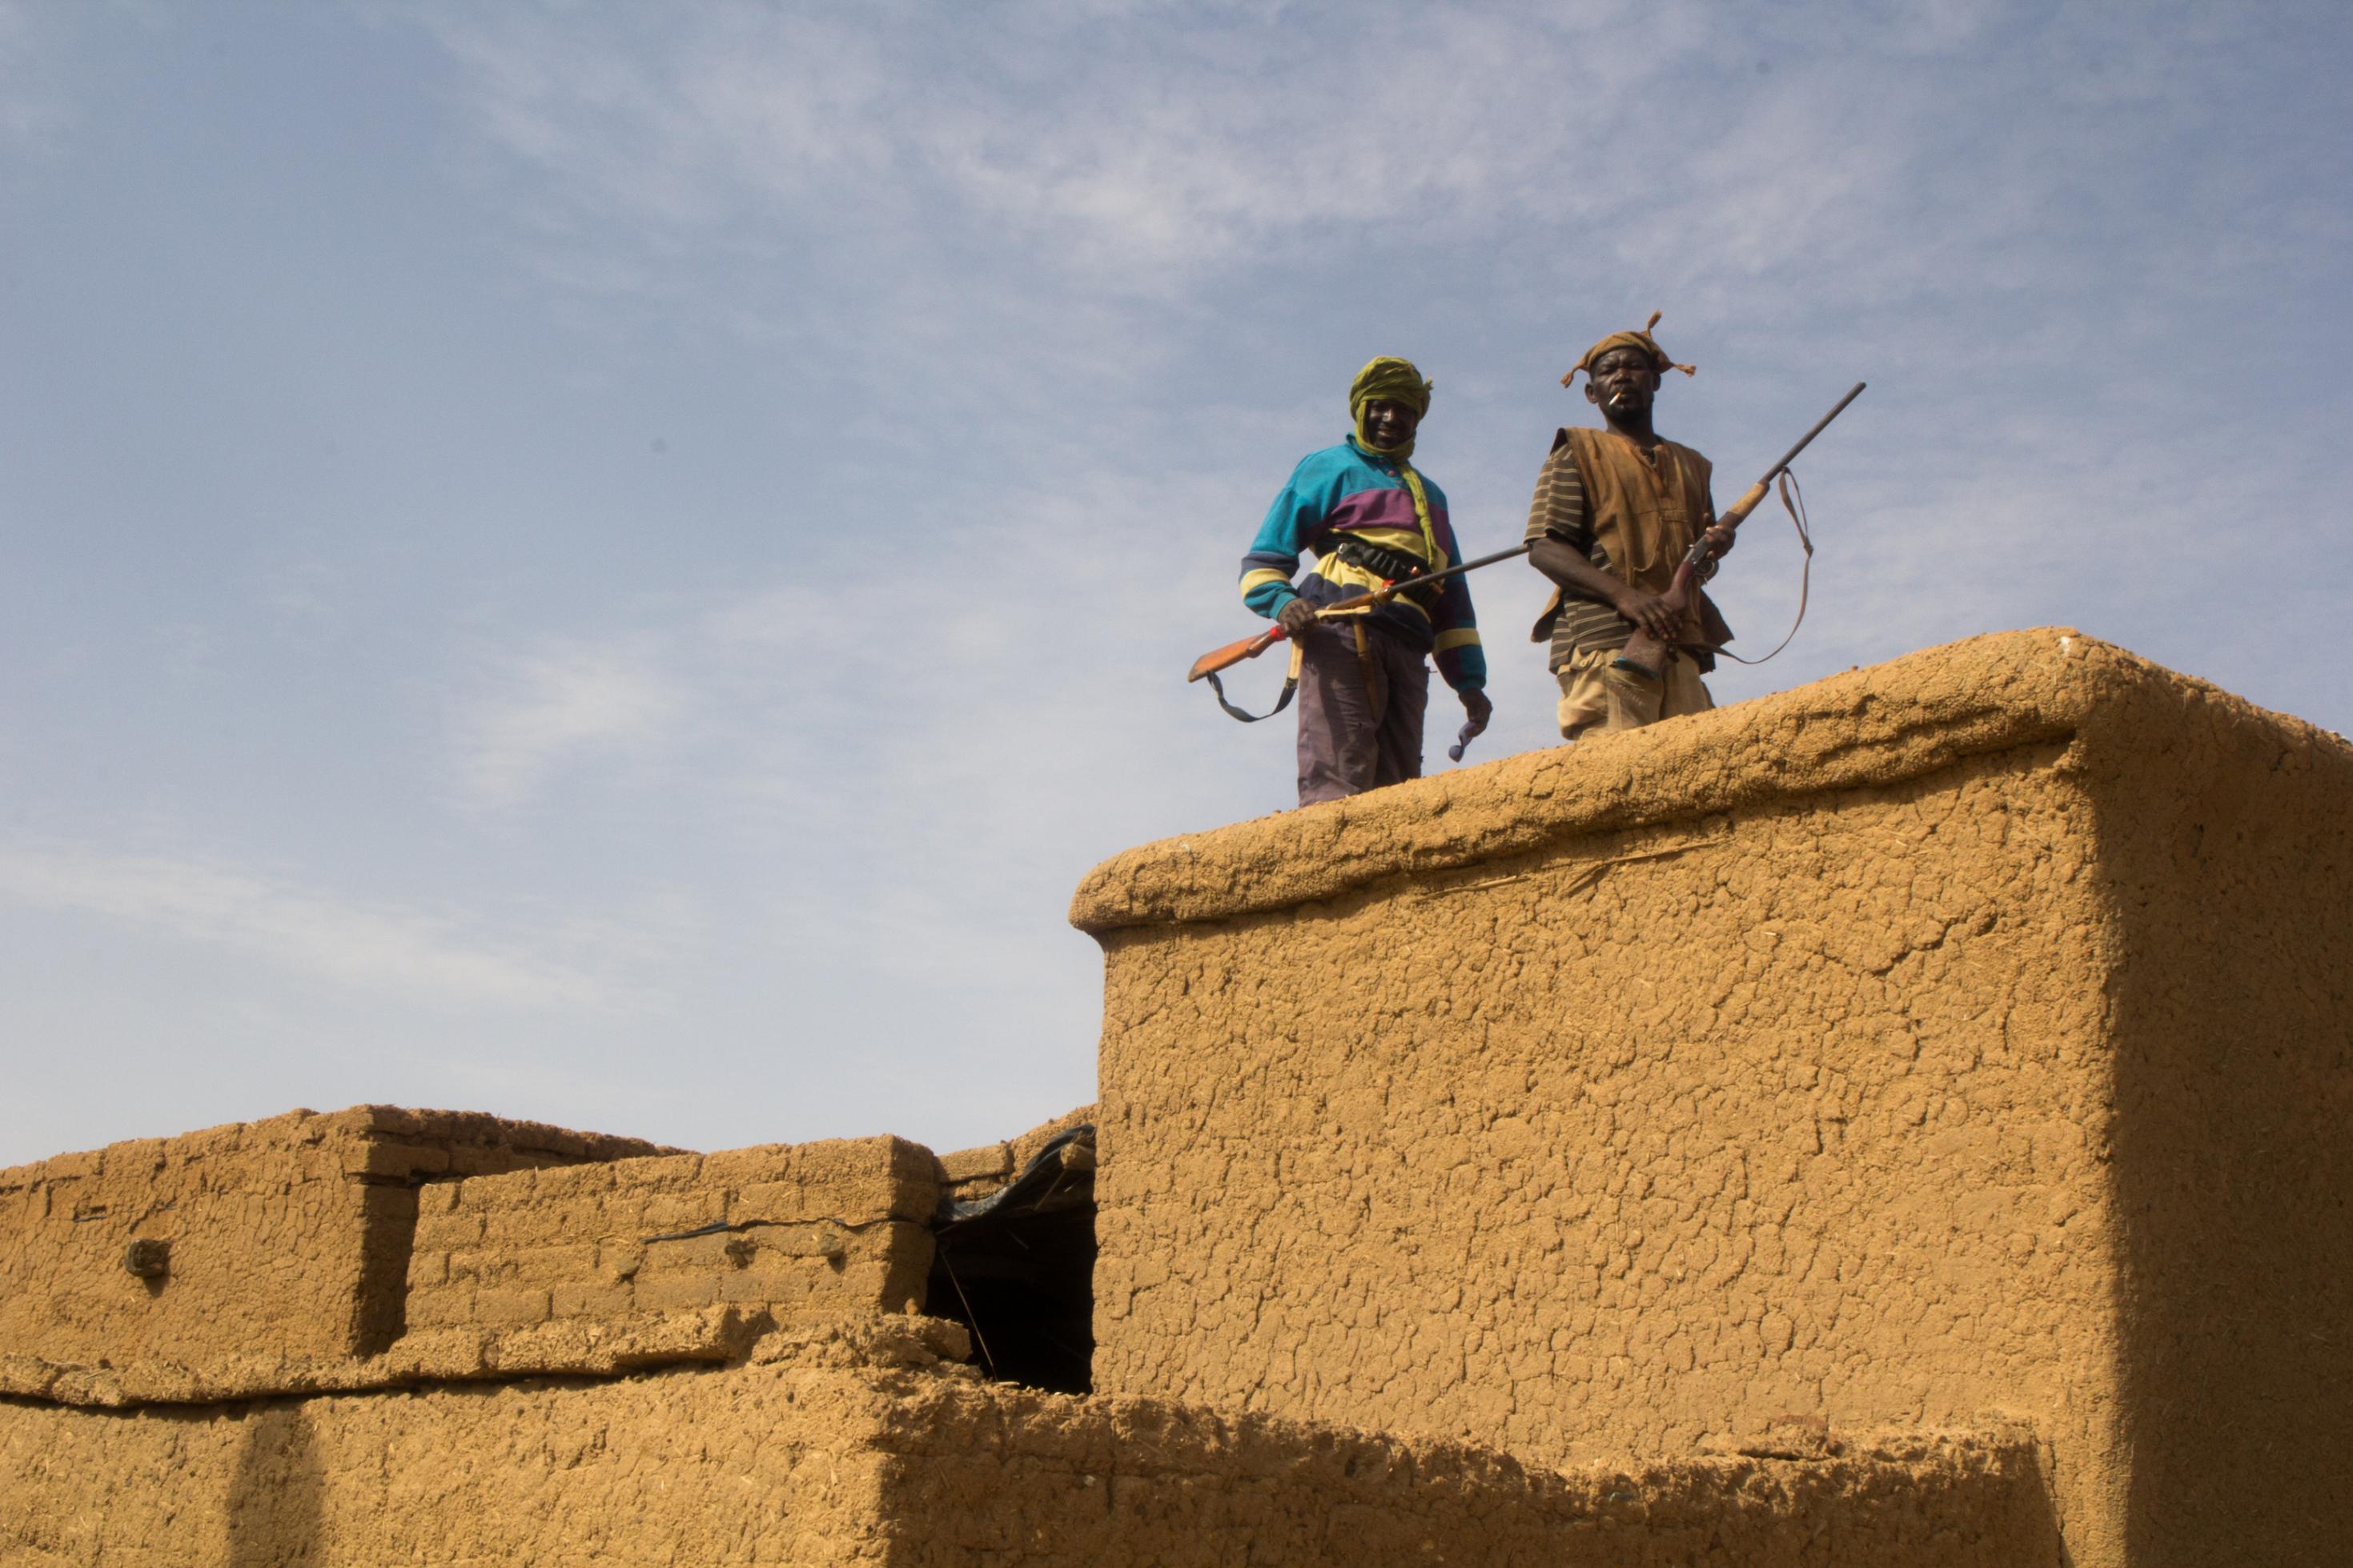 Auf dem Dach eines traditionellen Lehmhauses stehen zwei Männer mit Jagdgewehren. Sie tragen traditionelle Kleidung und Hüte aus grob gewebtem Stoff.